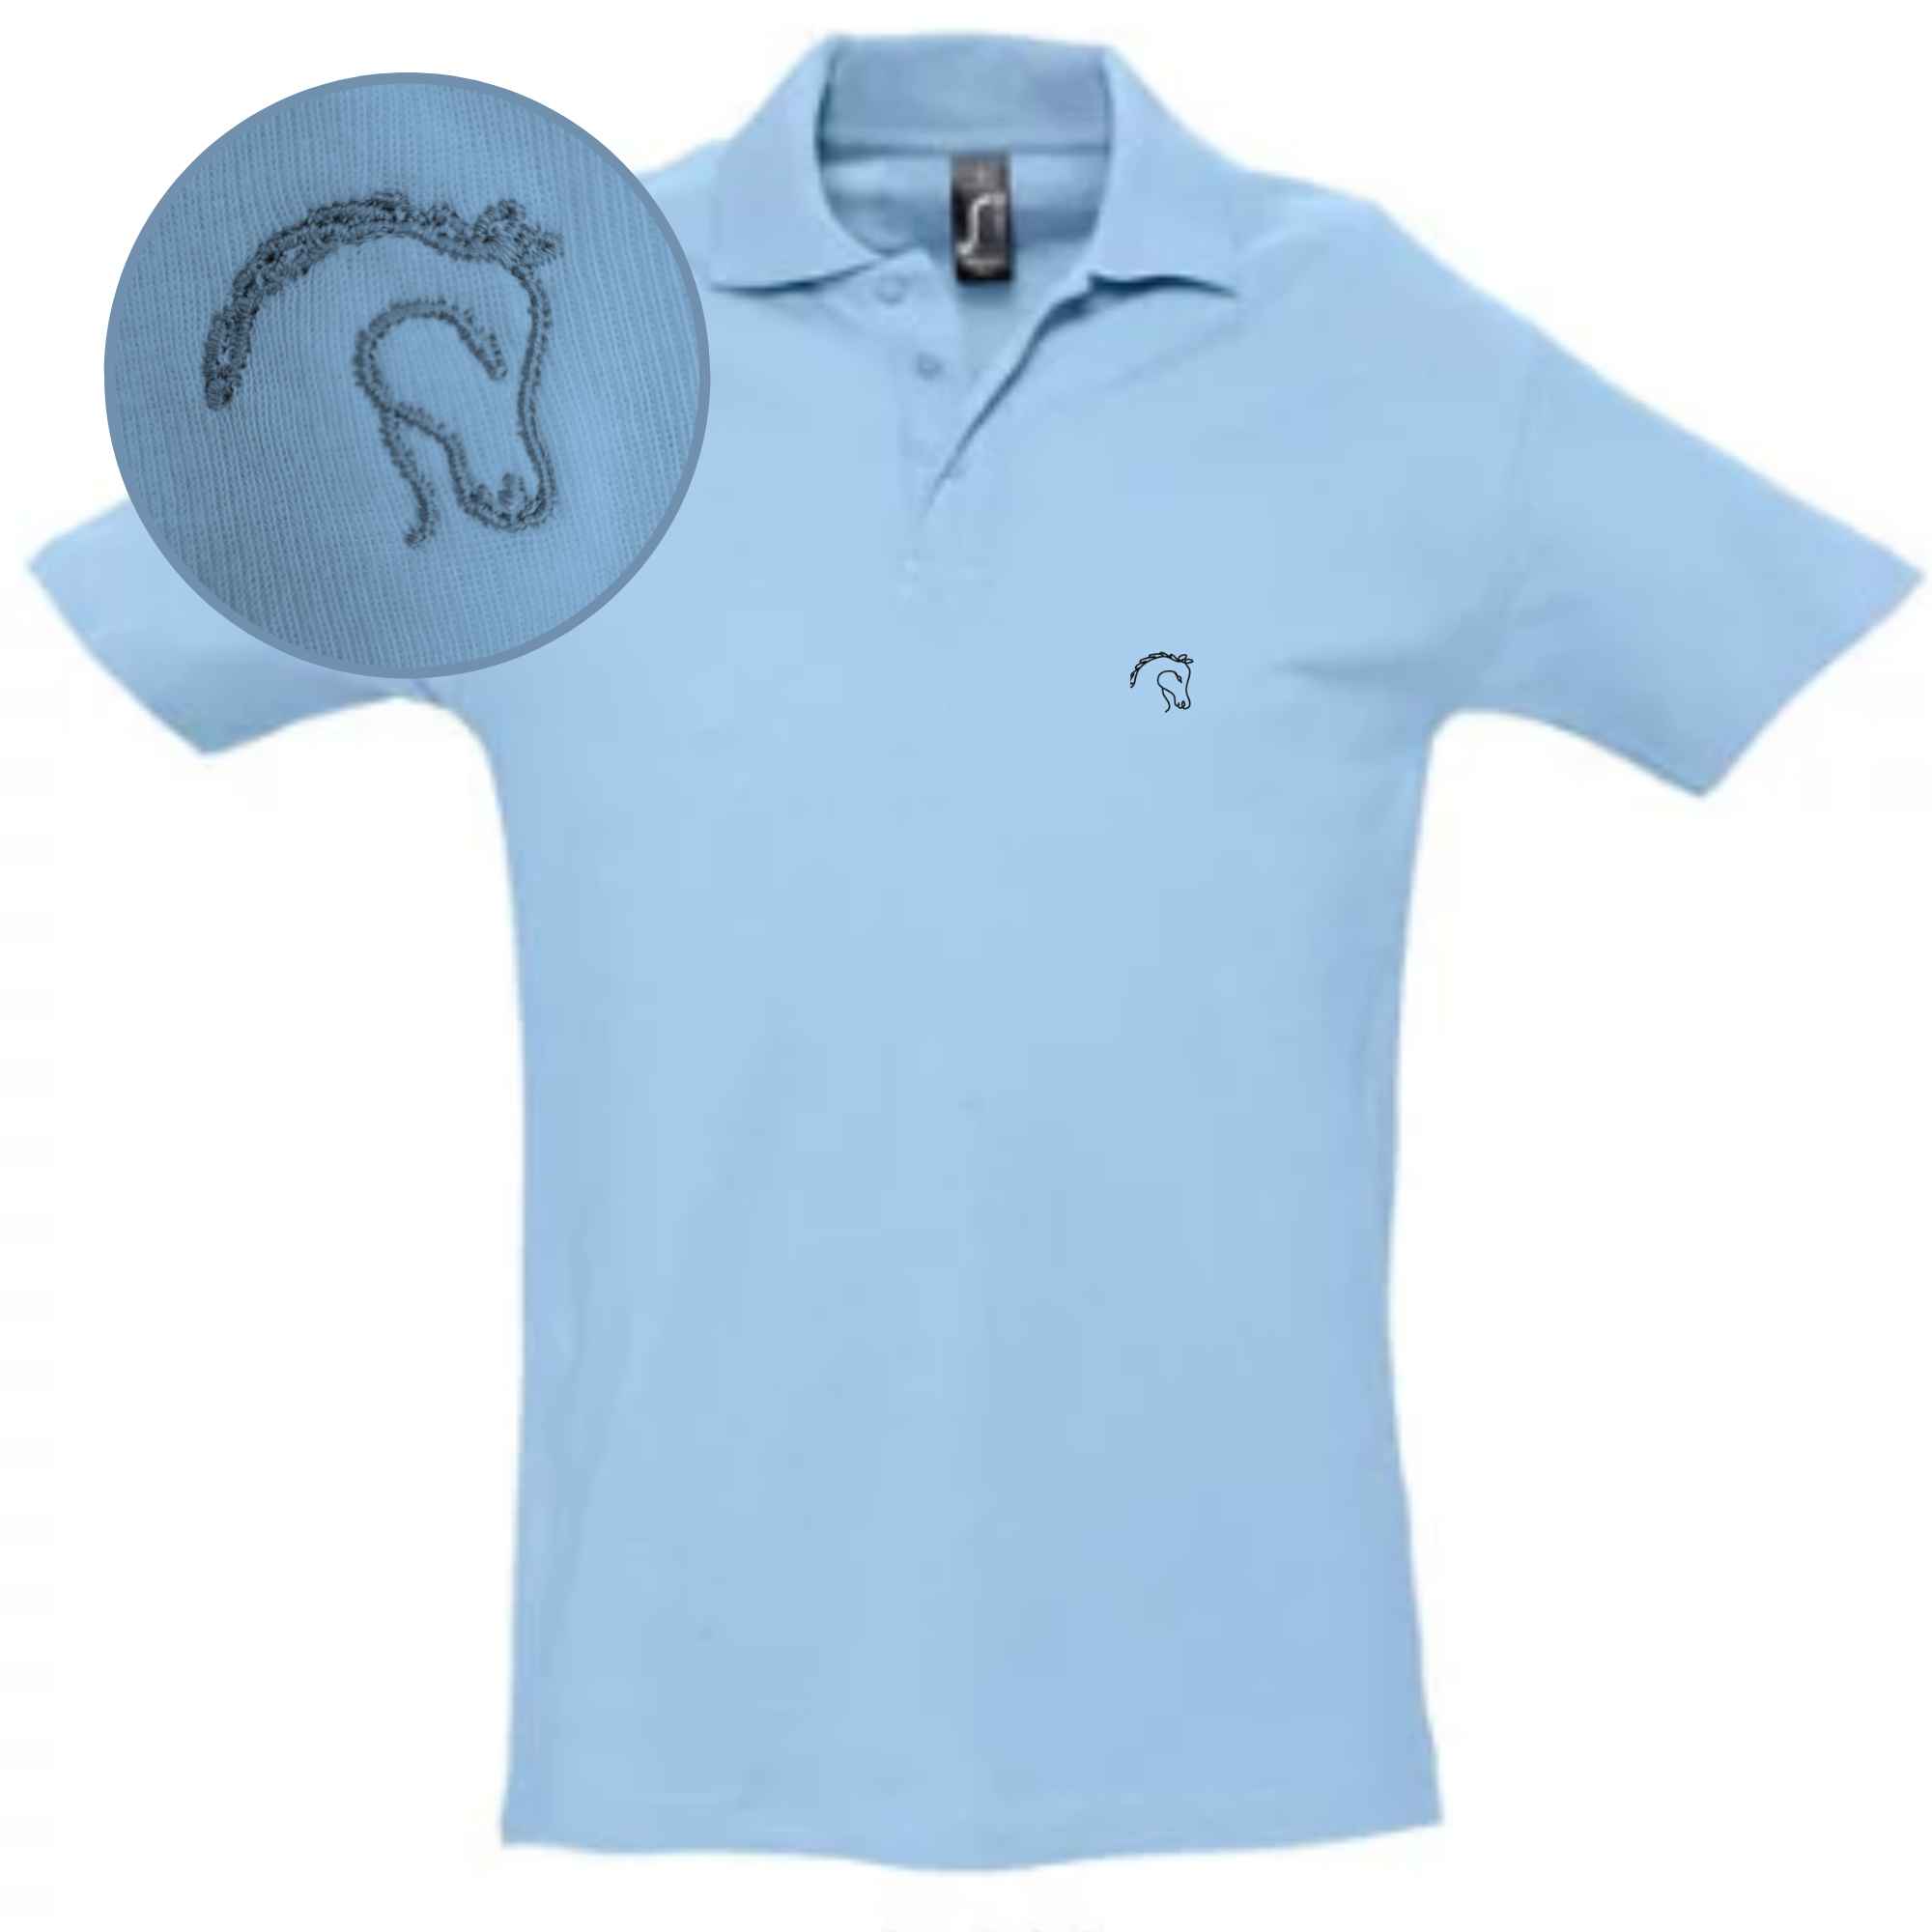 Besticktes Poloshirt mit Pferdekopf als Motiv in Farbe Hellblau